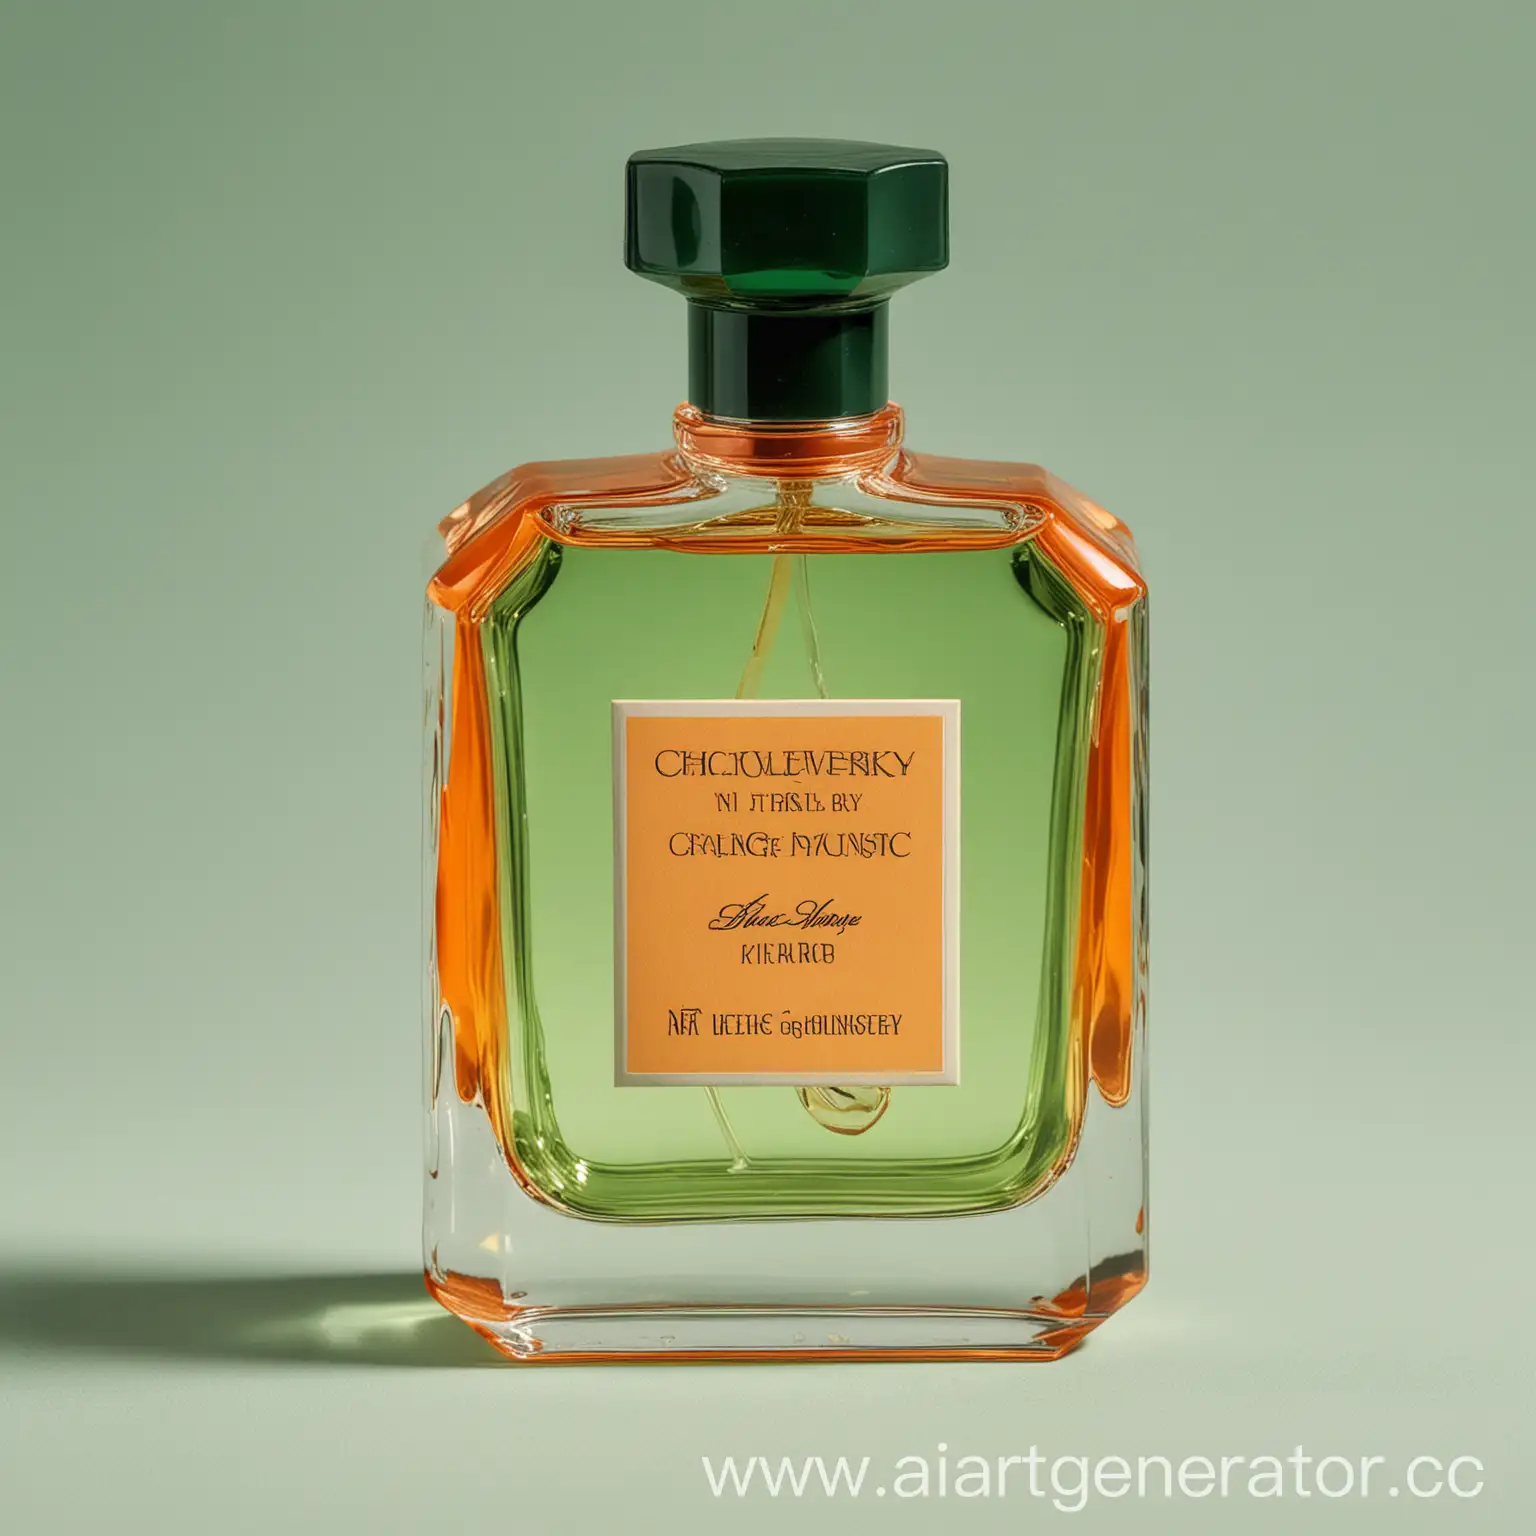 Chepelevitsky-Premium-Fragrance-Bottle-in-Vibrant-OrangeGreen-Hues